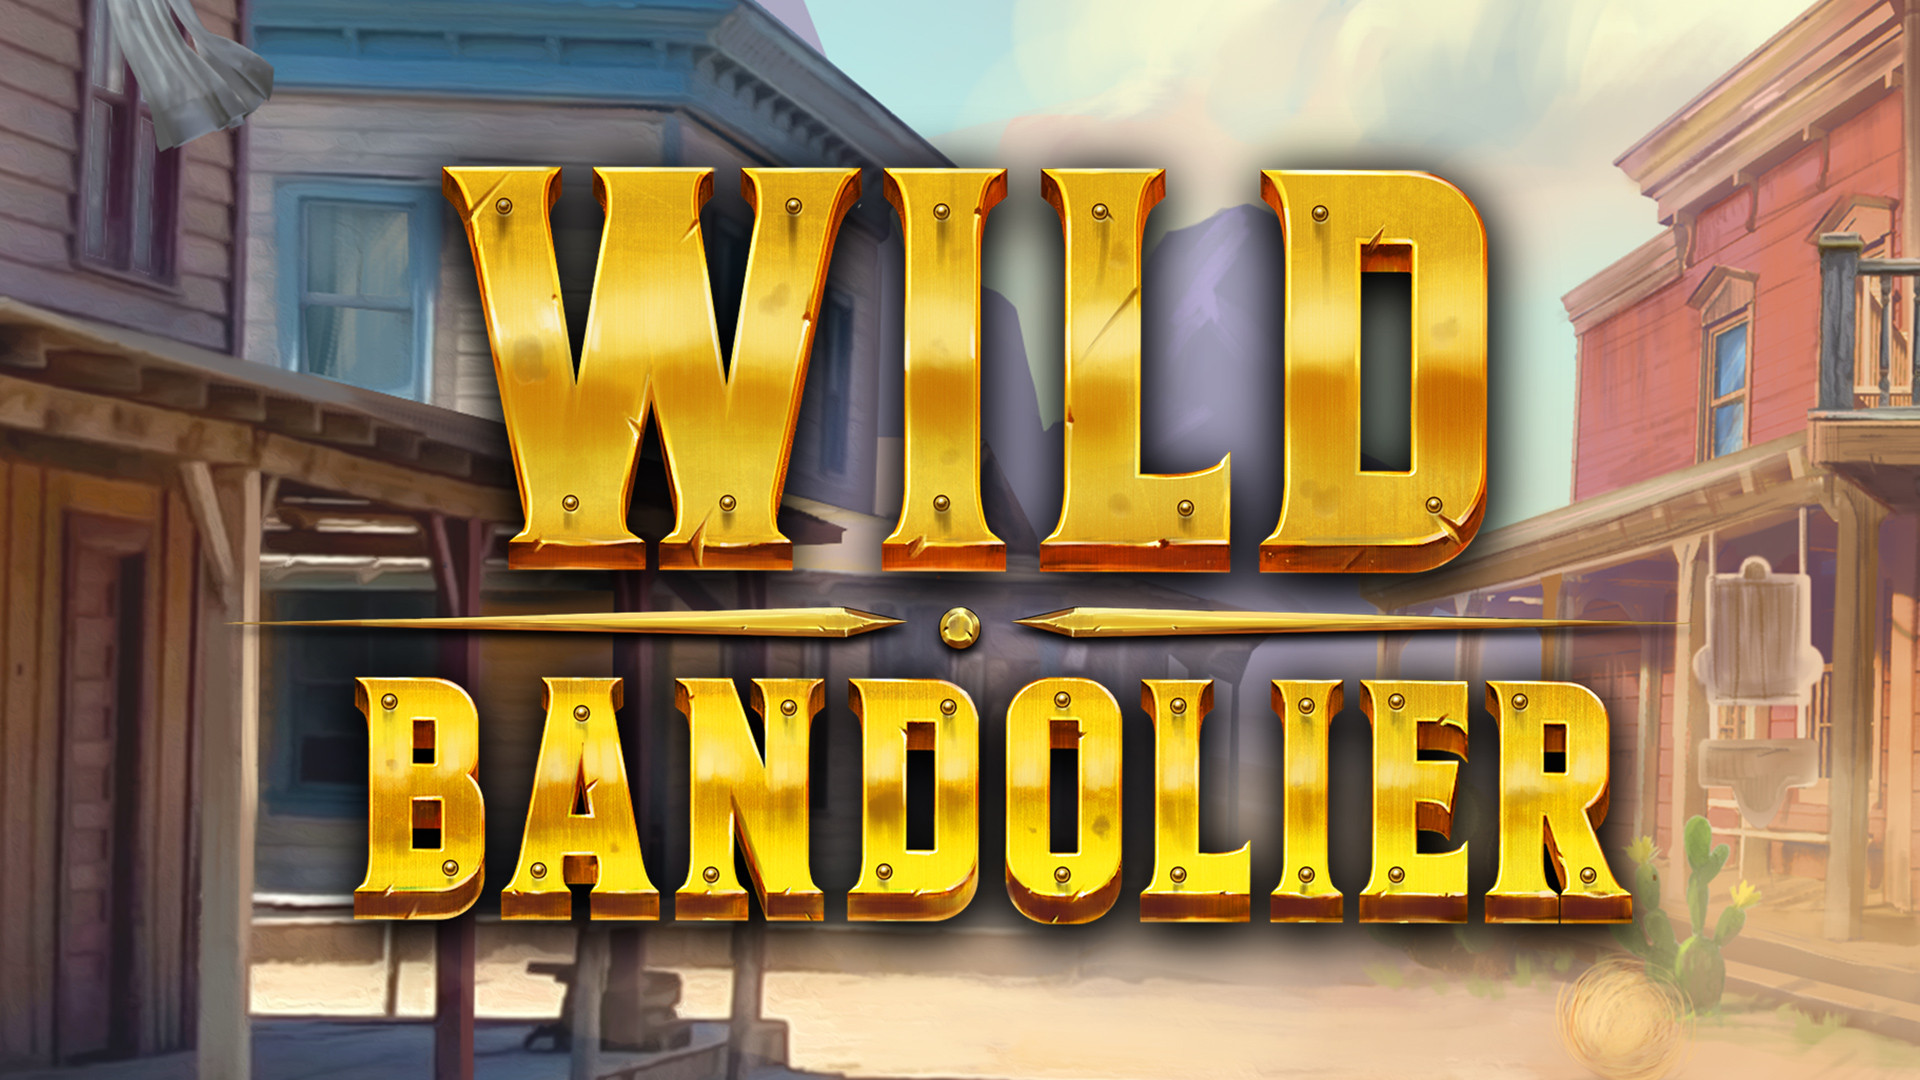 Wild Bandolier